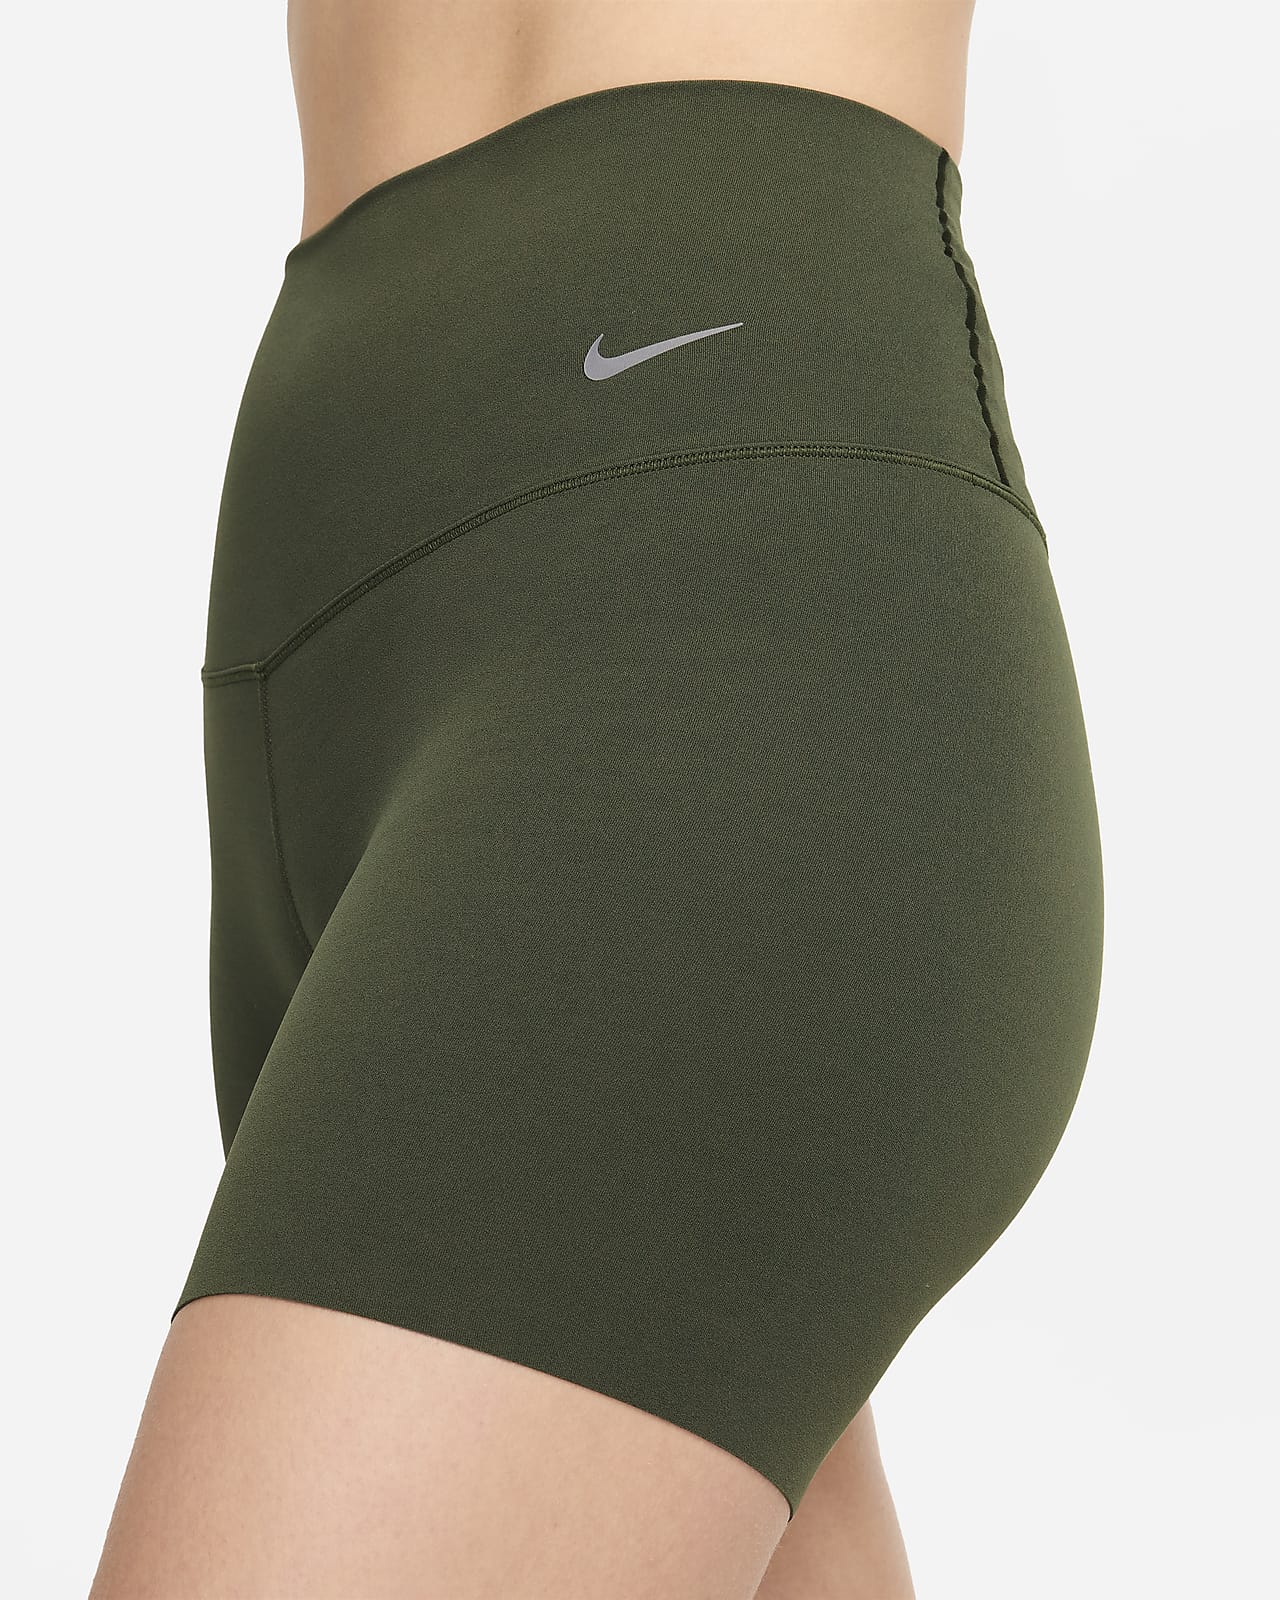 Nike Zenvy Women's Gentle-Support High-Waisted Full-Length Leggings. Nike .com